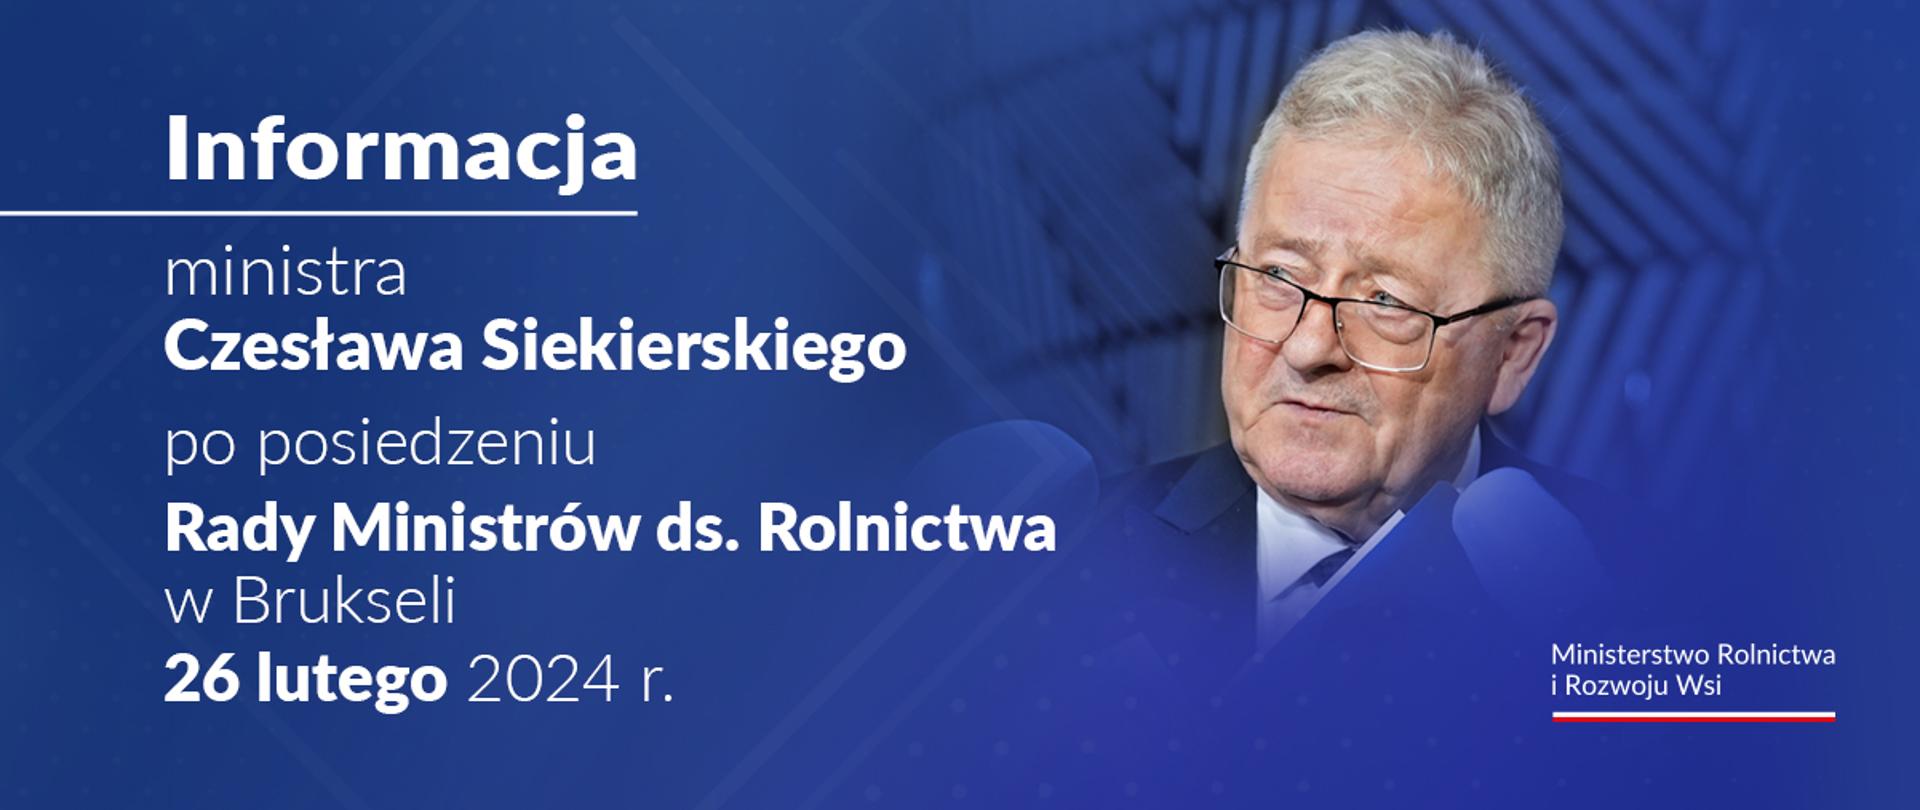 Informacja ministra Czesława Siekierskiego po posiedzeniu w Brukseli